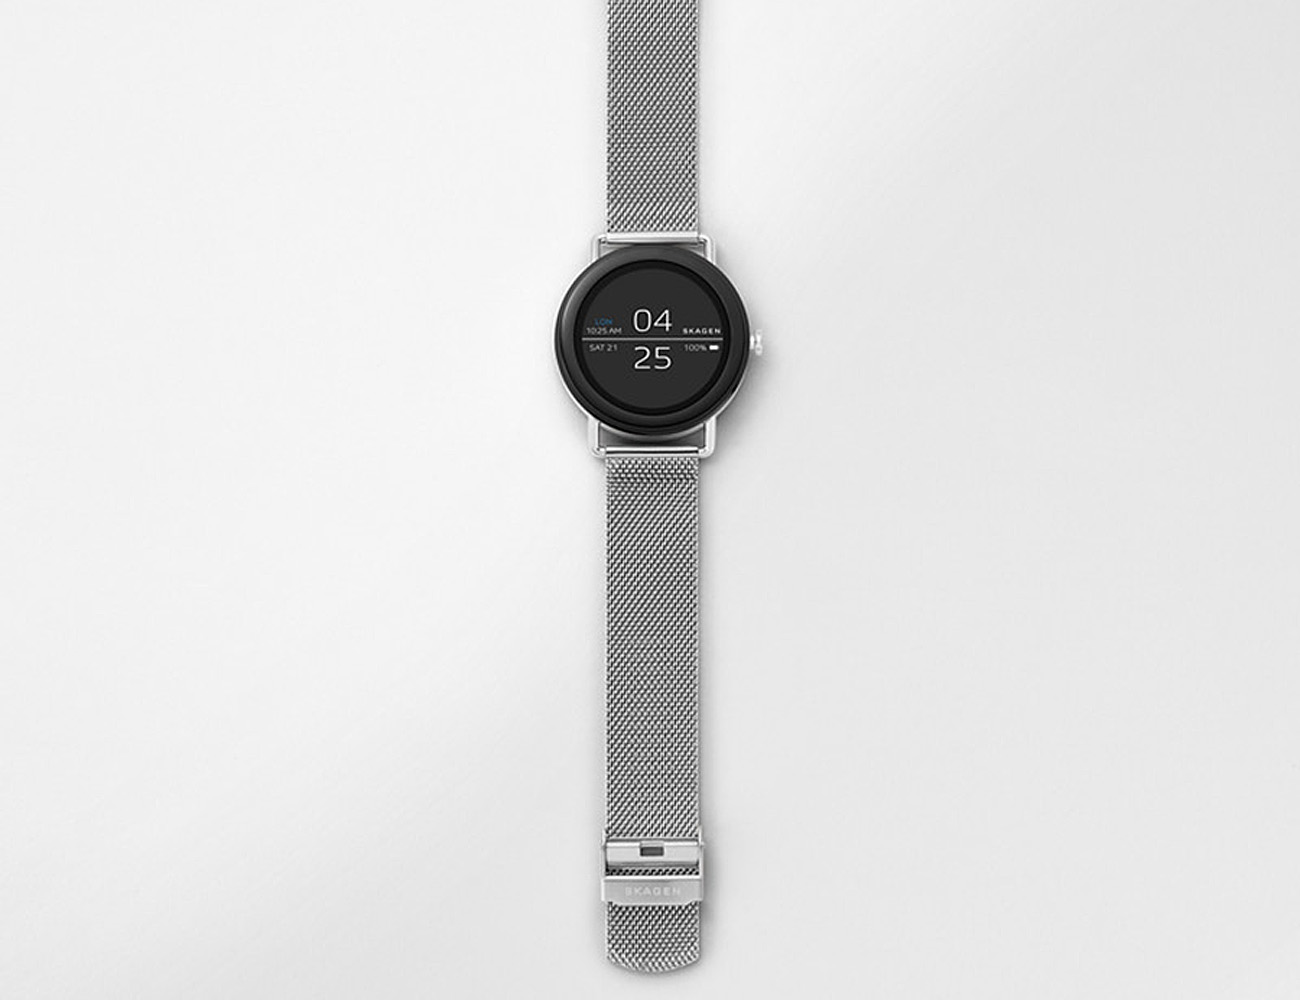 Skagen Falster Steel Mesh Android Wear Smartwatch